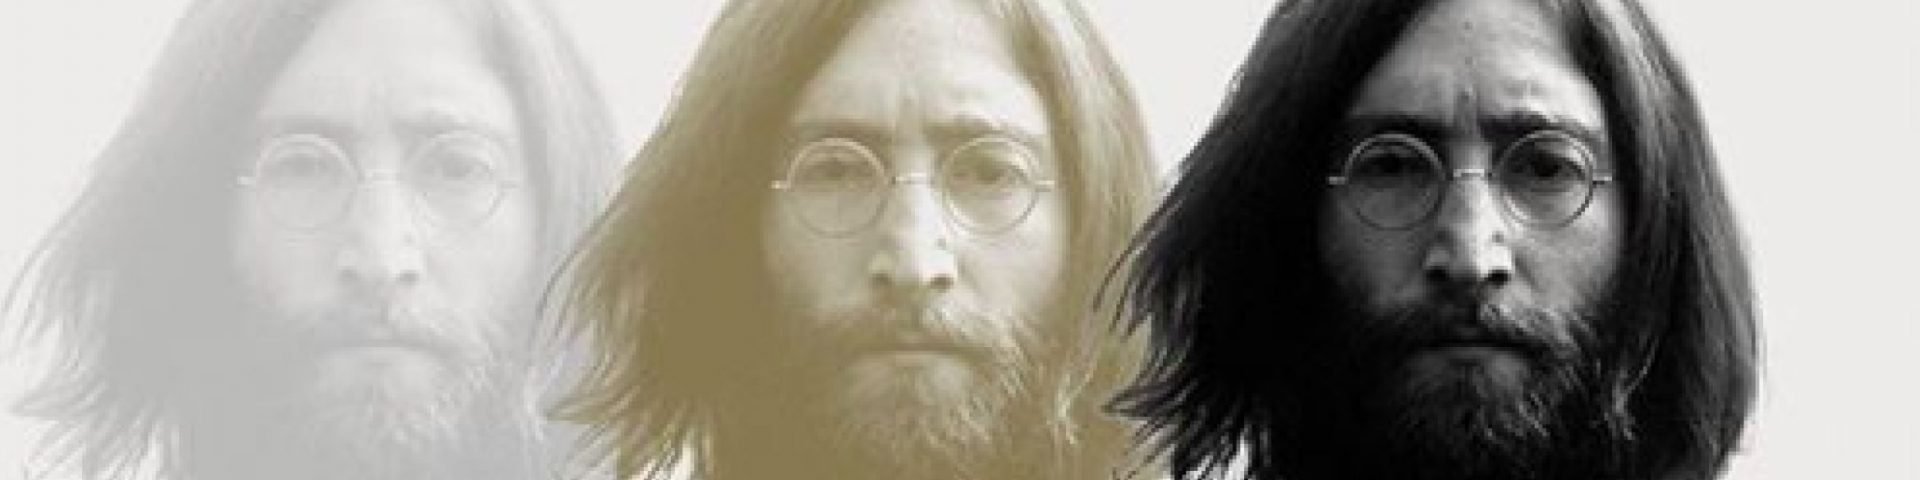 John Lennon su Tik Tok: la musica raccontata dai social